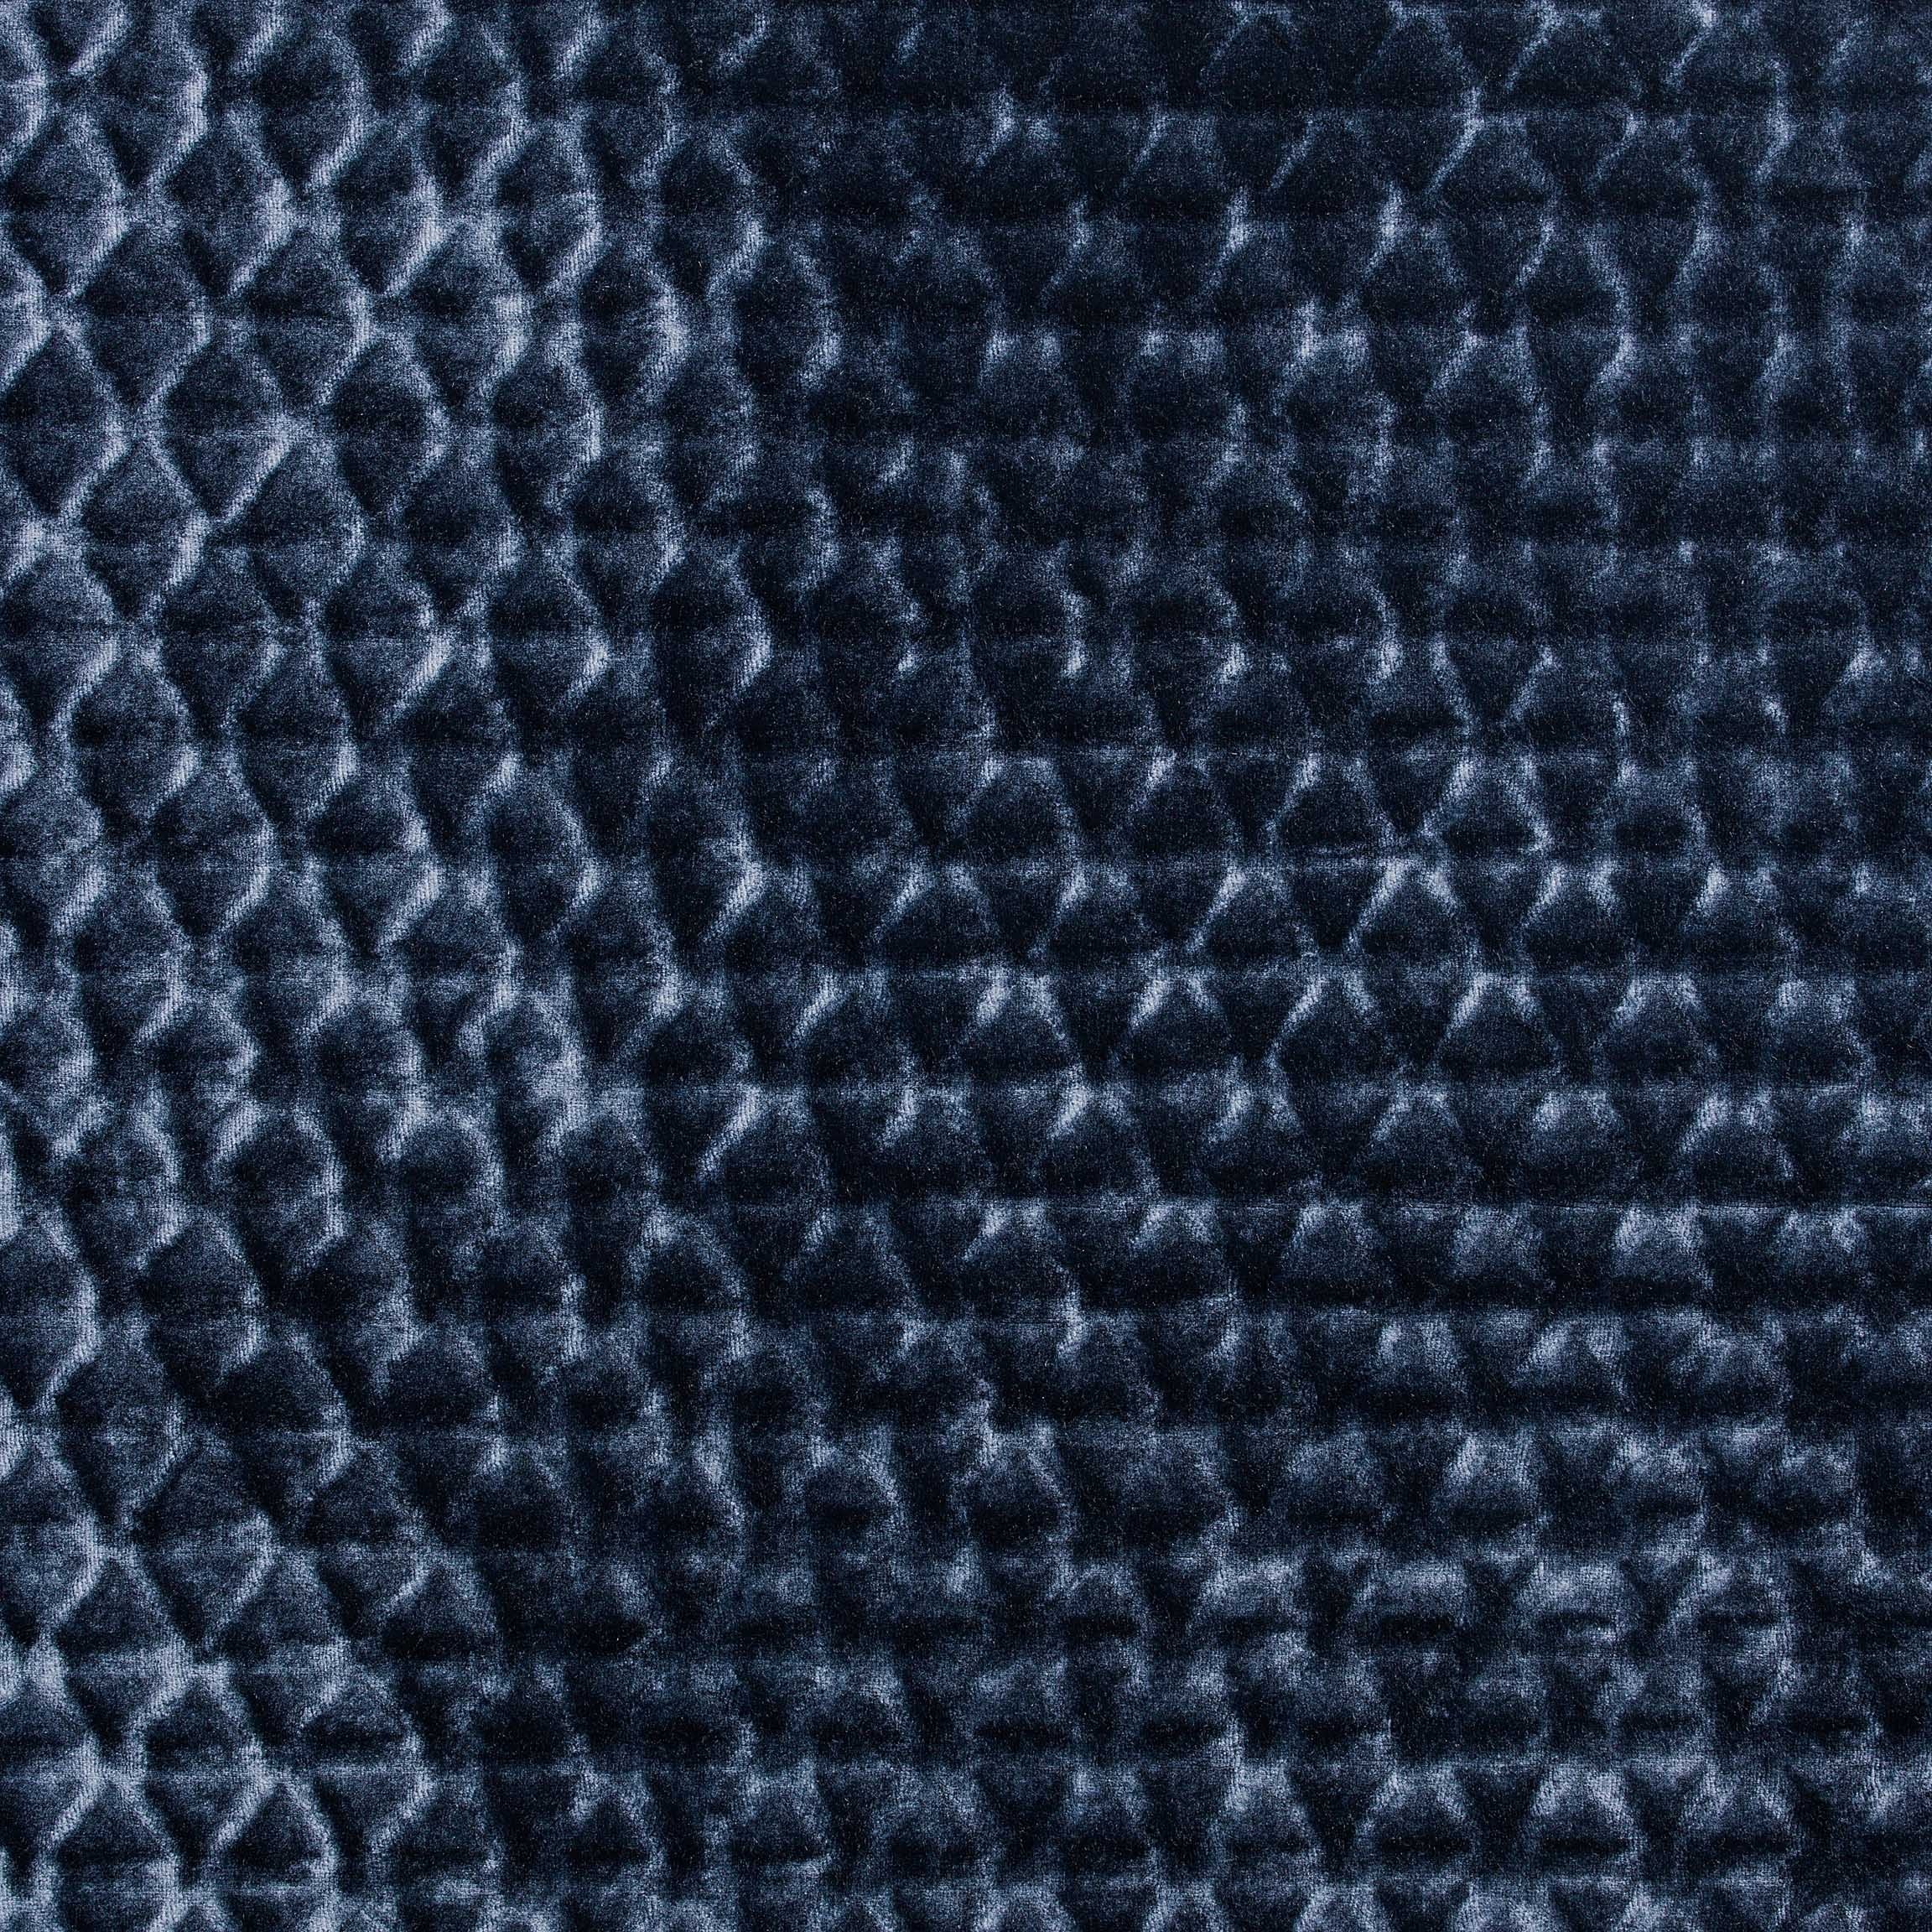  Портьерная ткань CANARY NAVY, ширина 140 см  - Фото